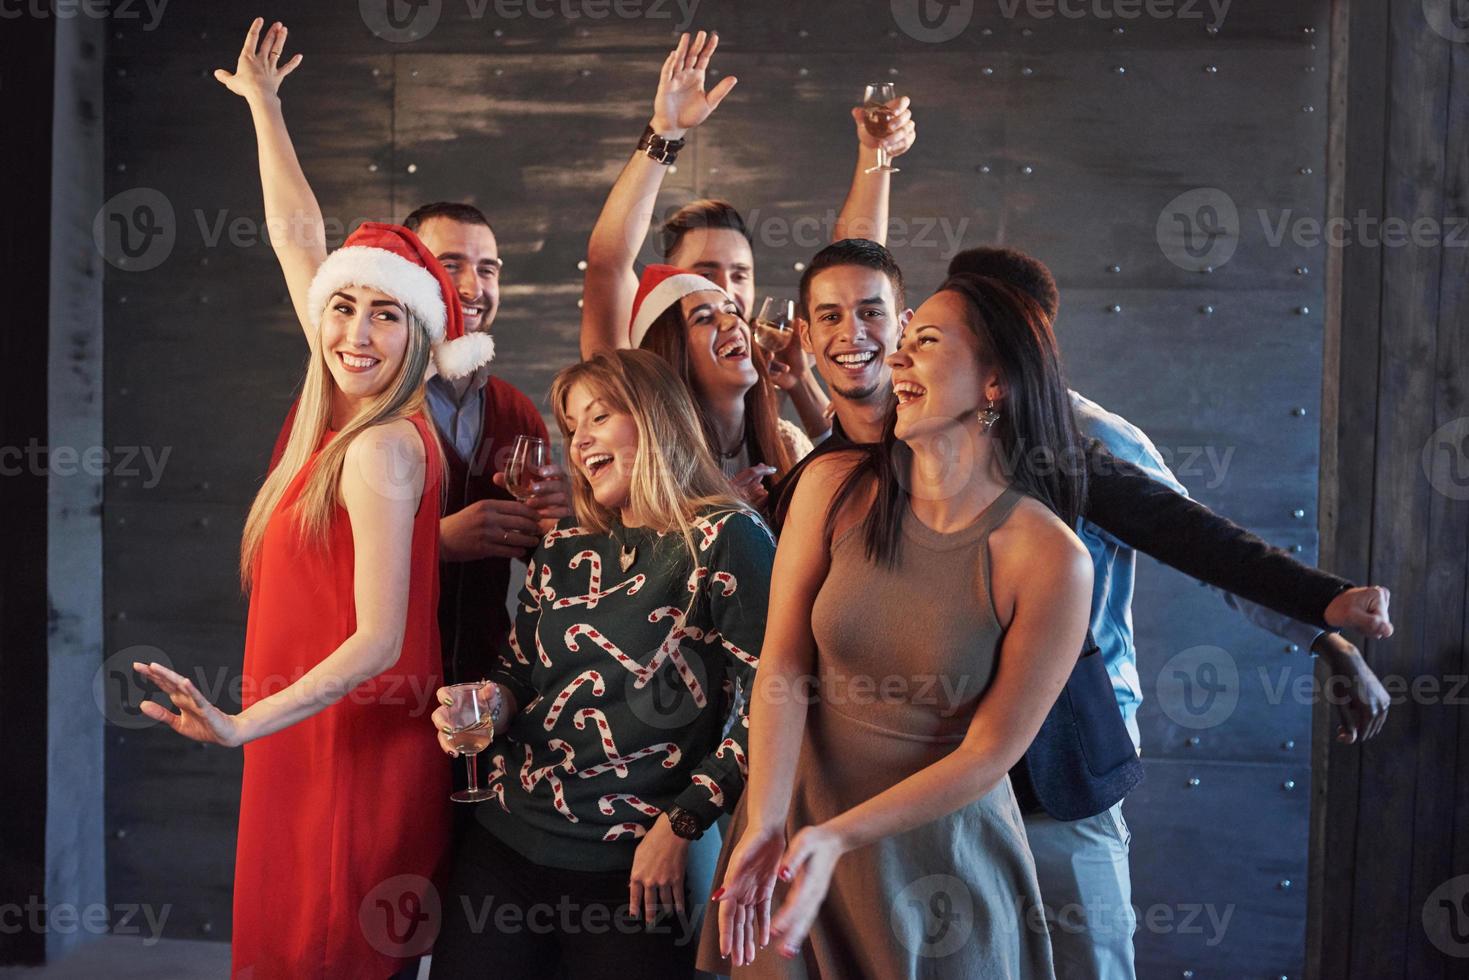 feest met vrienden. ze houden van kerst. groep vrolijke jonge mensen die sterretjes en champagnefluiten dragen die op nieuwjaarsfeest dansen en er gelukkig uitzien. concepten over saamhorigheid levensstijl foto